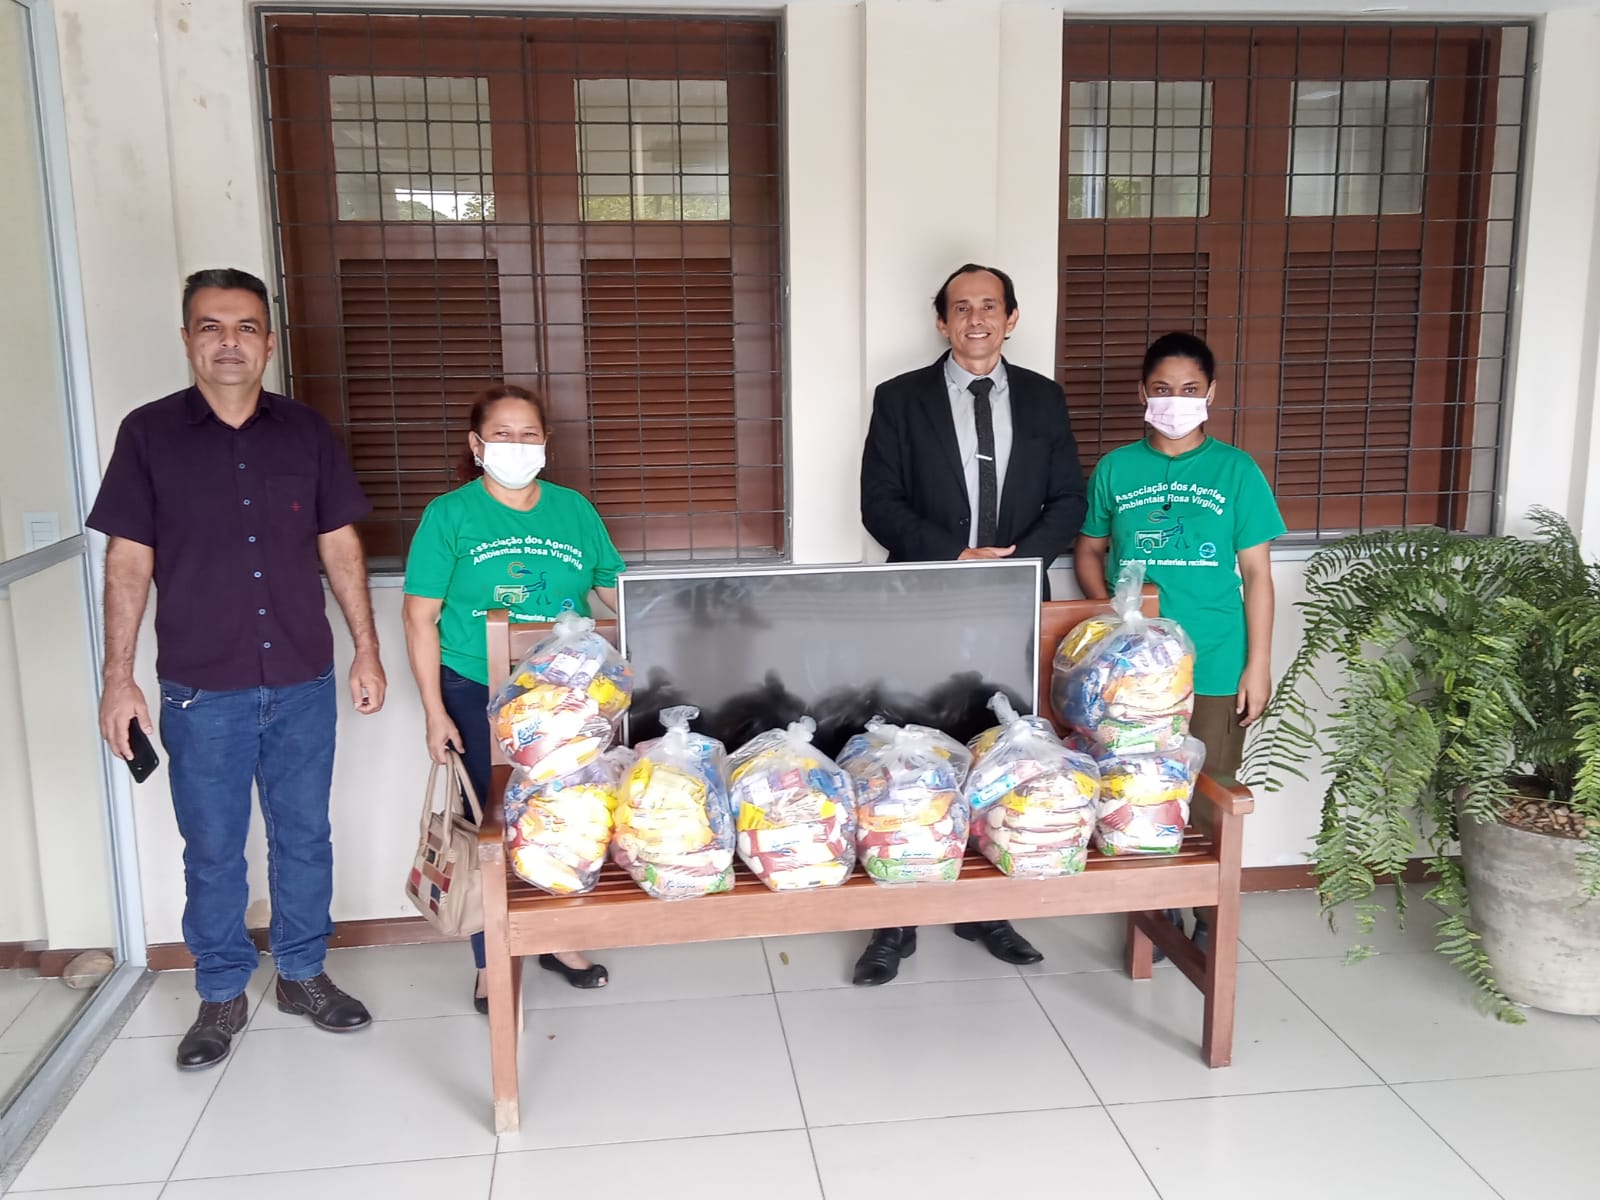 Supesp doa cestas básicas para comunidade no Bom Jardim e recicláveis para projeto da UFC